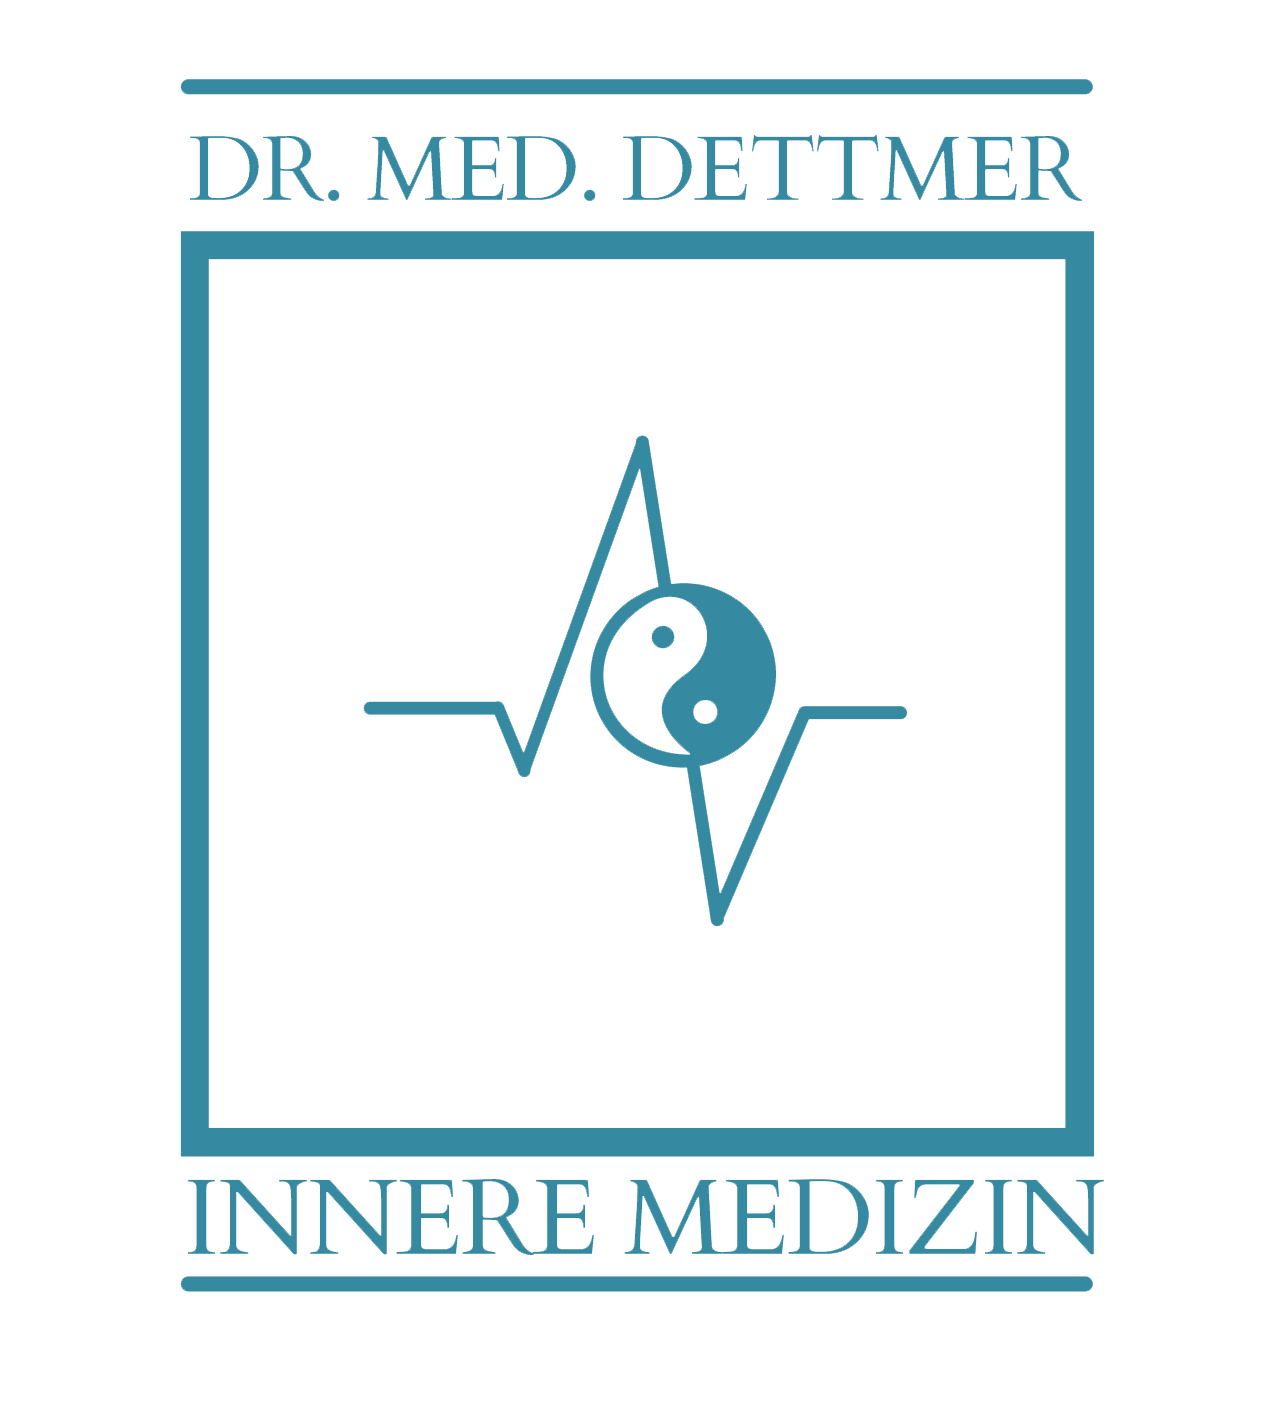 Dr Dettmer